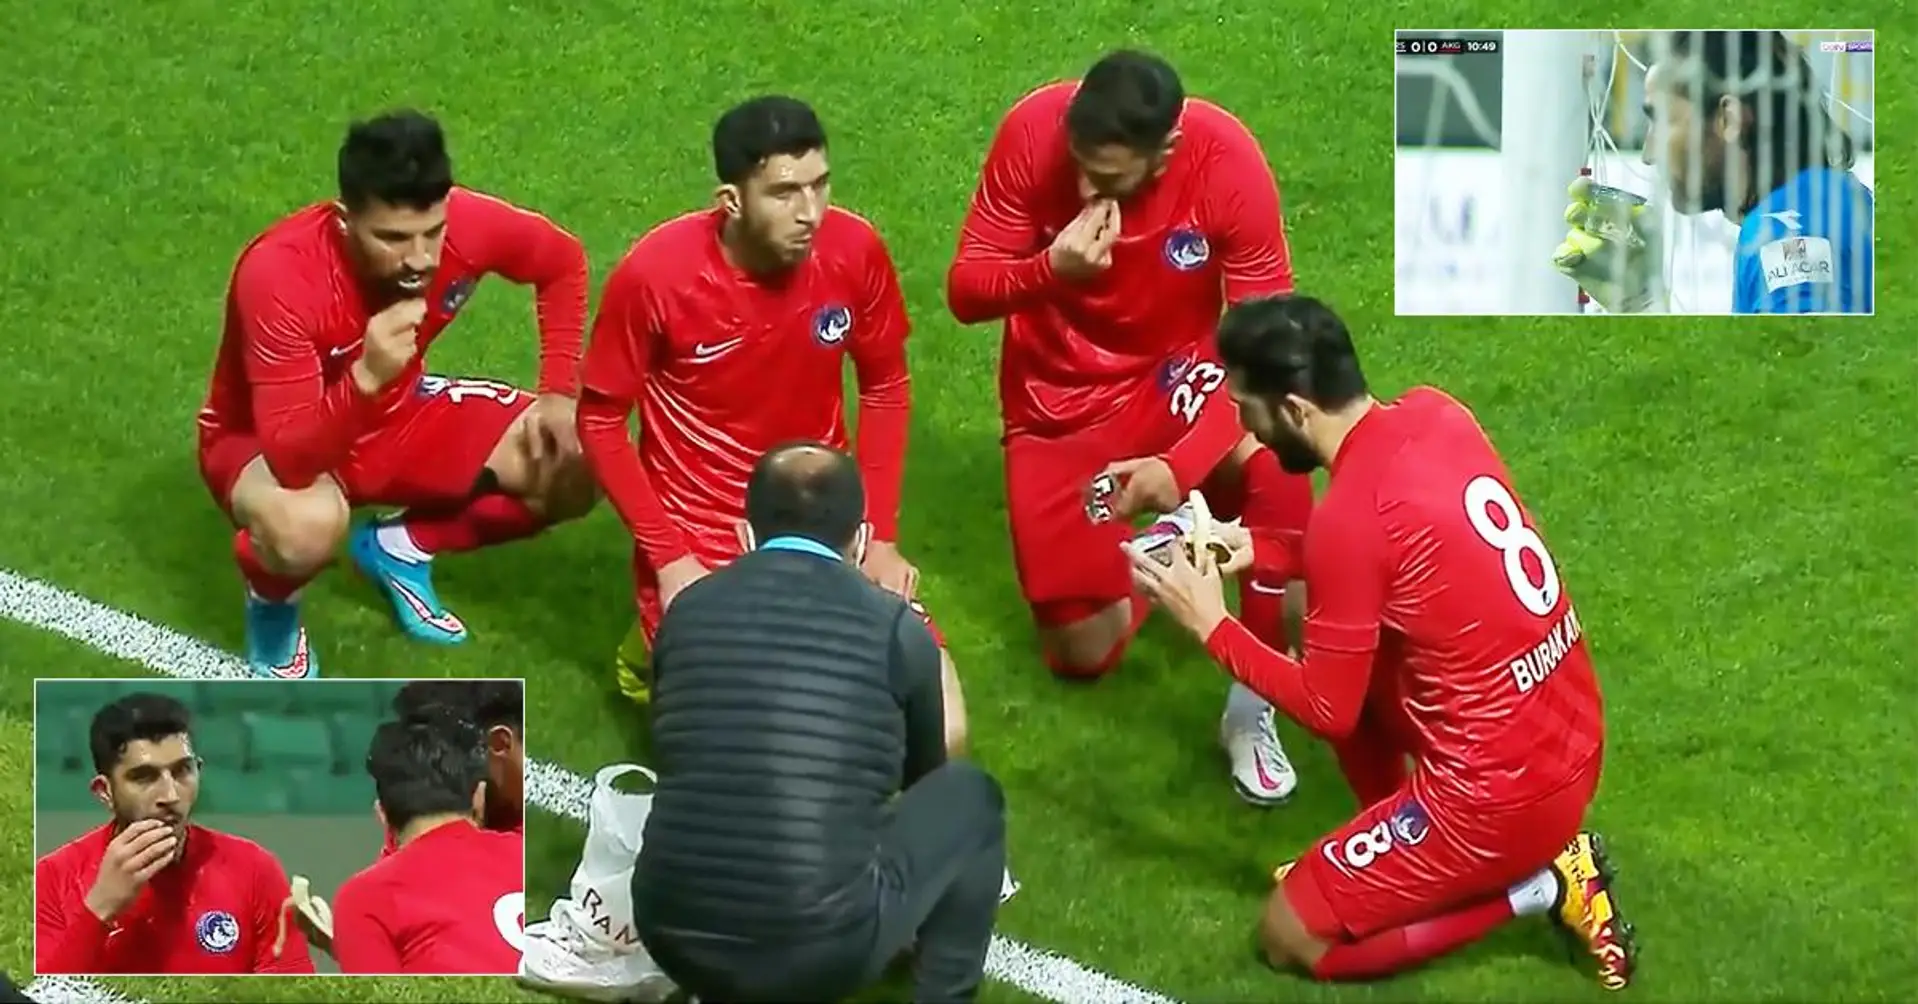 Fußballspiel in der Türkei abgebrochen, damit Spieler ihr Ramadan-Fasten brechen konnten - Video geht viral